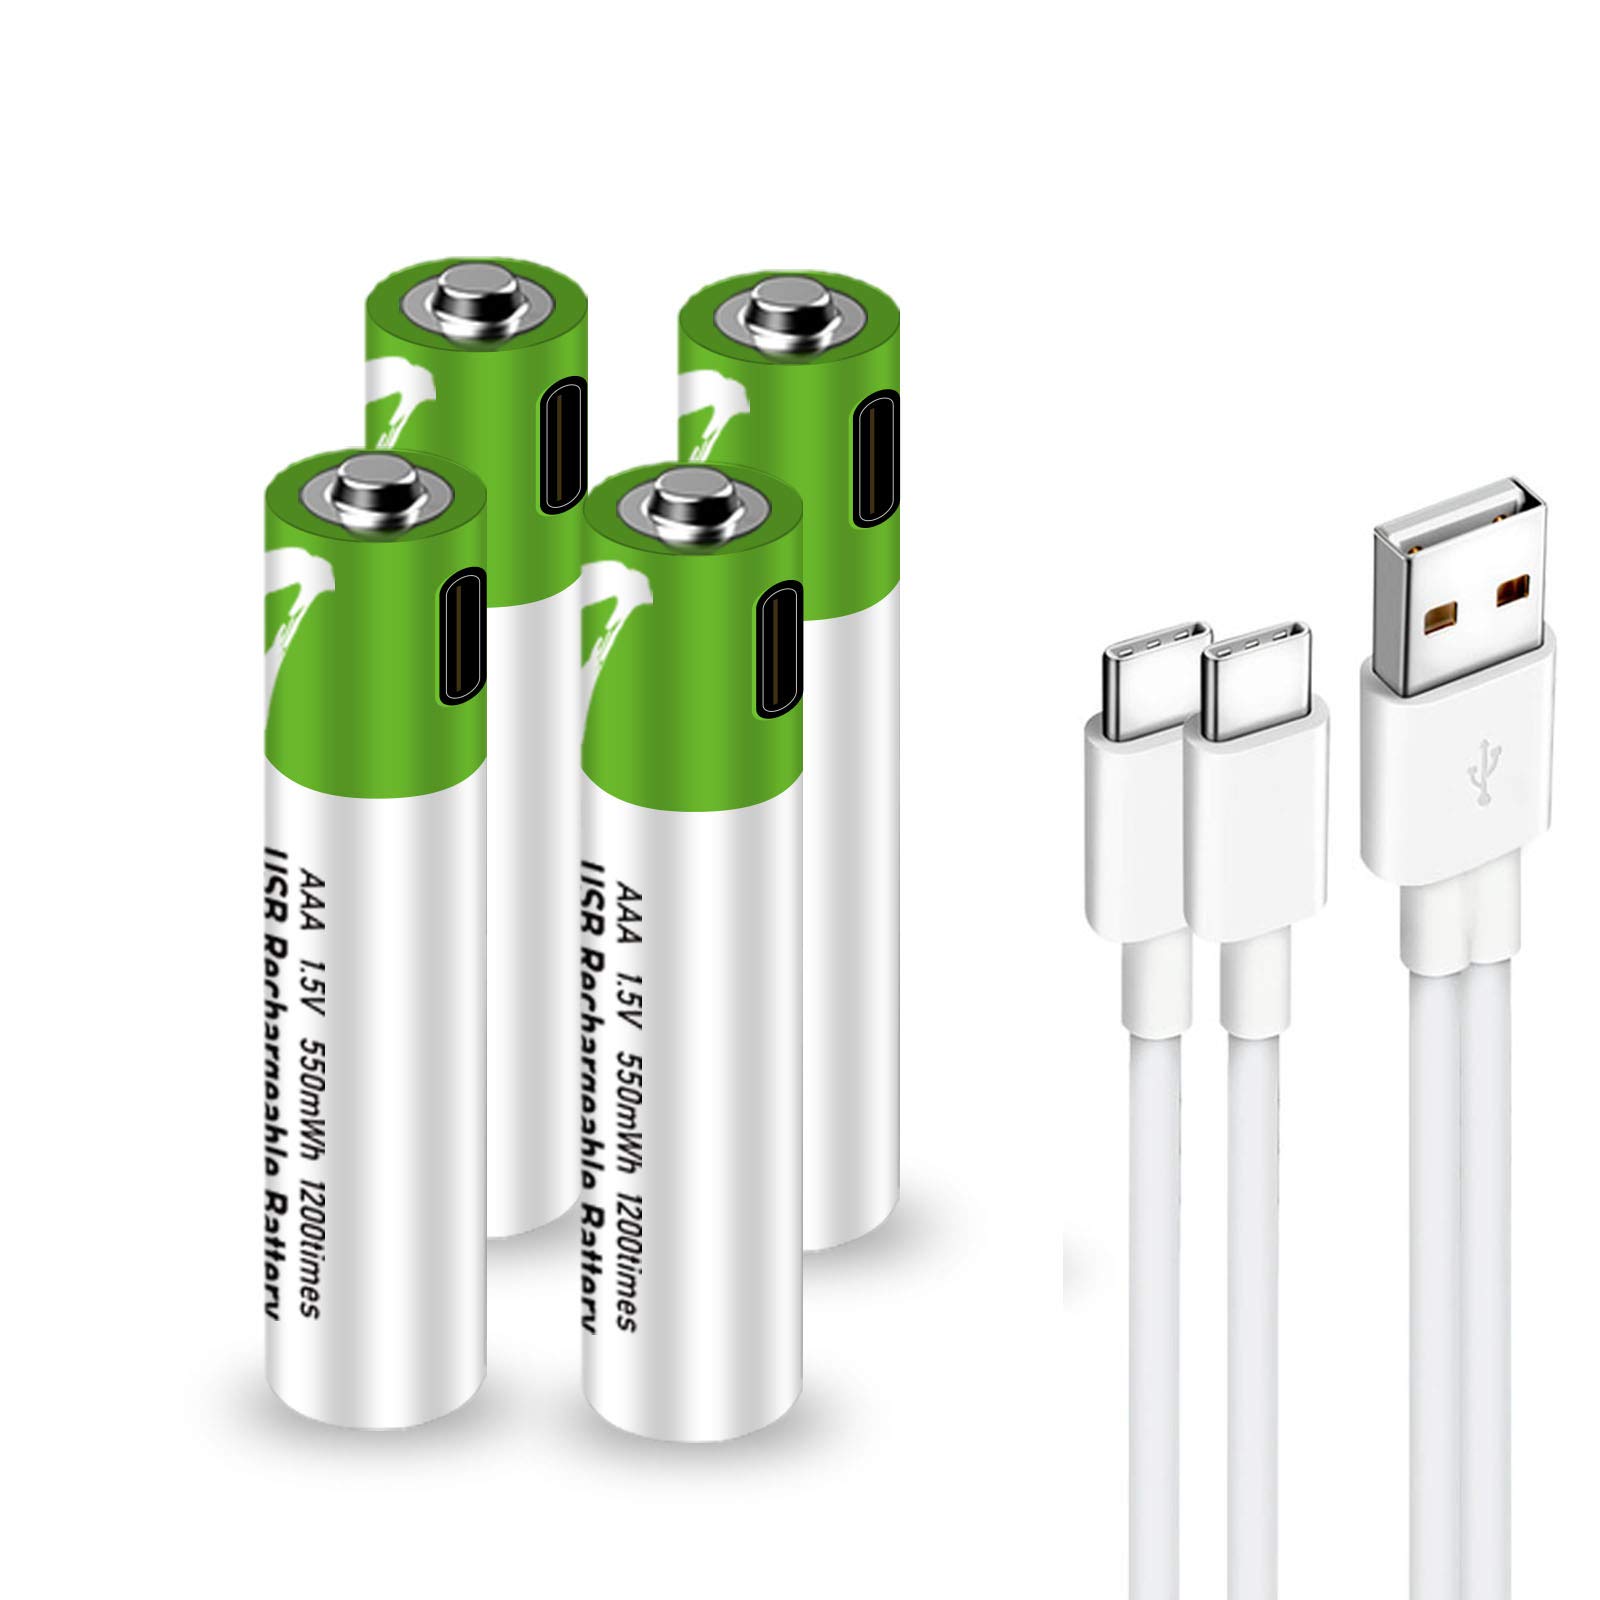 商品情報商品の説明説明 【紹介】 USB-Cリチウムイオン二次電池は、当社が製造した特許製品です。 バッテリーにはUSB充電ポートが付いているので、バッテリーの充電がより便利になります。 1200回のリサイクルが可能で、省エネ・環境にやさしいです。 USB-Cリチウム電池を購入すれば、乾電池を購入する必要がなくなります。 【保証】品質に問題がある場合は、1年間の無料交換サービスを提供します 【仕様】 バッテリータイプ：単4充電電池 サイズ：11mm X 44mm 電圧：1.5V 容量：750mWh(500mAh) バッテリー：リチウム電池 充電時間：1-1.5時間 充電ポート：TypeC 充電状態：充電中は緑色のLEDが点滅します。 満充電後緑色のライトが点灯したままになる。 サイクル：1200サイクル 【包装内容明細書】 単4形充電池×4個 4 in 1 Type-C 充電ケーブル x 1個 収納ボックス 【注意】 1.リチウム電池は、フラッシュユニットなどの大電流を必要とする製品に使用することはできません。使用すると、電池が熱くなり、外皮がはがれ、電池が正常に動作しなくなります。 2.充電中はバッテリーを使用しないでください。 3.充電中は、正極と負極を接触させないこと。 4.バッテリーの充電には、従来のバッテリー充電器ではなく、任意のTypeCケーブルを使用してください。 5.電子機器やバッテリーのリサイクルについては、地域の規制に従ってください。 ユーザーマナウルを注意深くチェックしてください、それはあなたを助けることができます。 または、Szemptyが販売したクリックをクリックして、オンラインメッセージでセラーテクニカルサポートを取得します。主な仕様 【迅速で充電が簡単】：Smartoools単四電池は最速で1時間以内に完全に充電でき、待機時間は1年です。 4 in 1 USB-TypeCケーブル（付属）と5V充電器（付属なし）で充電できます。br【大容量】：750mWhの大容量、1.5vの定出力により、デバイスの動作がより安定し、より多くの時間が動作します。このSmartooolsAAA充電式バッテリーは、自己消費電力が非常に低く、通常の鉛蓄電池のメモリー効果がなく、バッテリー寿命を著しく低下させることなく、これらのバッテリーを常に充電および放電します。br【1.5V定電圧】：Smartoools 単四 1.5V USB充電式電池は、家庭用機器、屋外機器、カメラ機器を問わず、ほとんどの機器に適しています。子供のおもちゃ、リモコン、血圧計、電子スケール、ワイヤレスマウス、ドアロック、目覚まし時計、電動歯ブラシ、美容機器などの機器に広く使用されています。注：LEDキャンドル、懐中電灯、フォトフラッシュなどのLED製品には使用できません。br【環境にやさしい】：Smartoools単4電池は1200回充電できるので、何千もの乾電池を節約し、埋め立て地を減らすことができます。これらのバッテリーには、水銀、カドミウム、鉛は使用されていません。br【安全保証】：内蔵の安全回路がバッテリーを過放電/過充電から保護します。このリチウム充電池は、FCC、CE、PSE、UN 38.3およびPSEの認定を受けています。 長期間使用しない場合は、3か月ごとにバッテリーを充電することをお勧めします。品質に問題がある場合は、1年間の無料交換サービスを提供します。